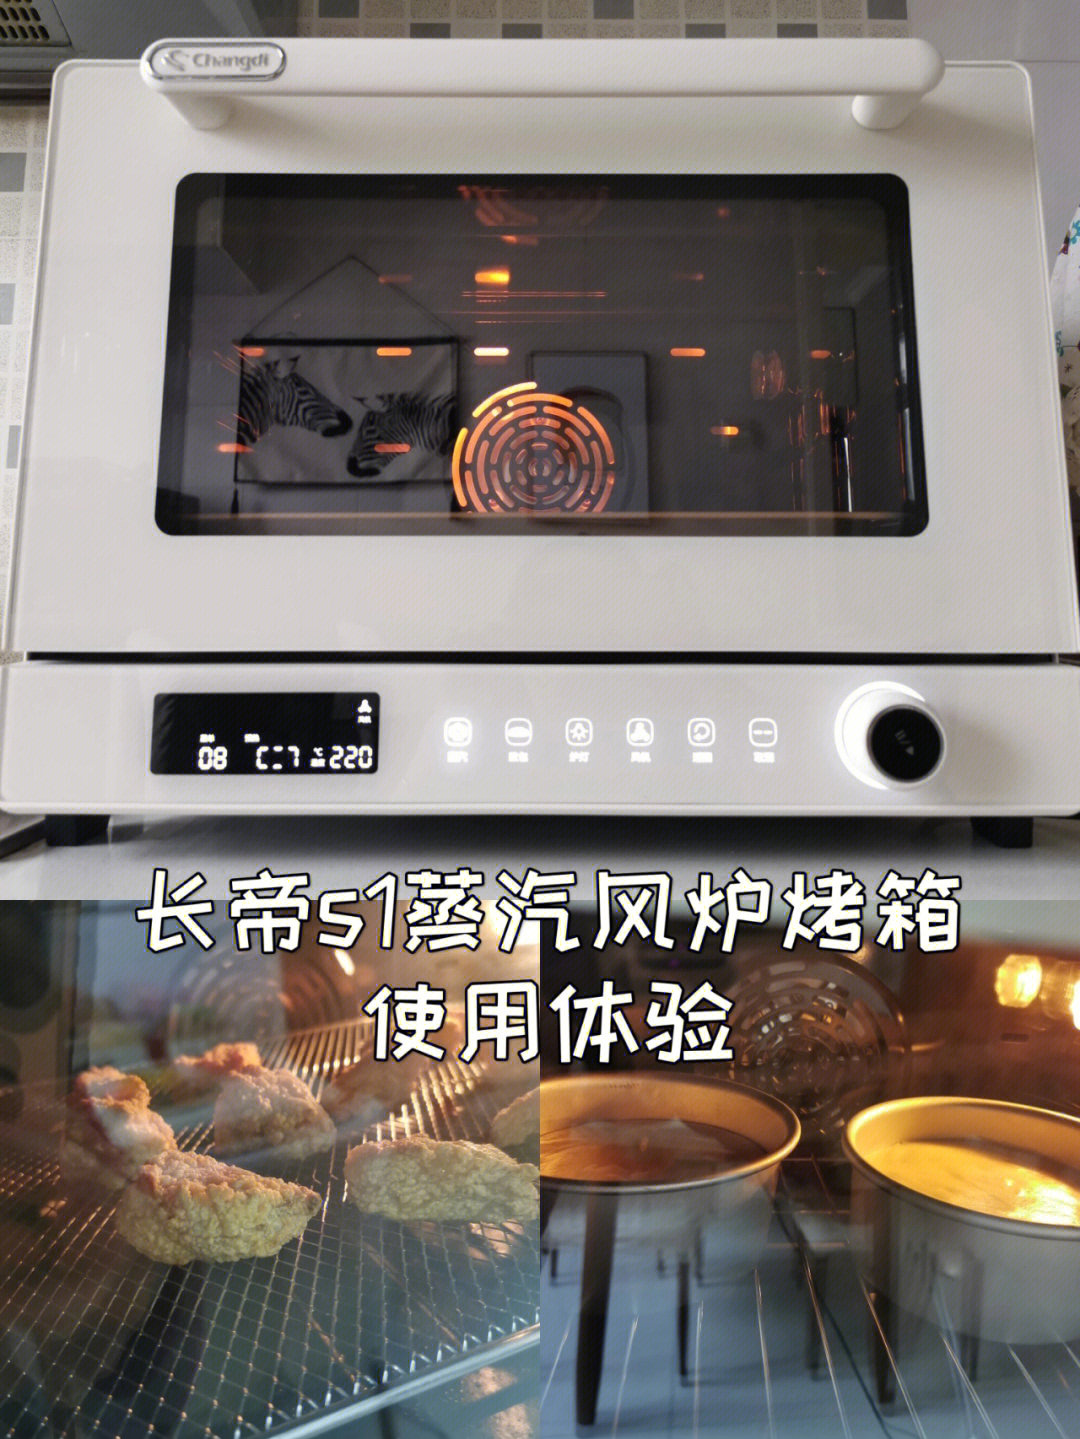 长帝烤箱风炉功能图标图片